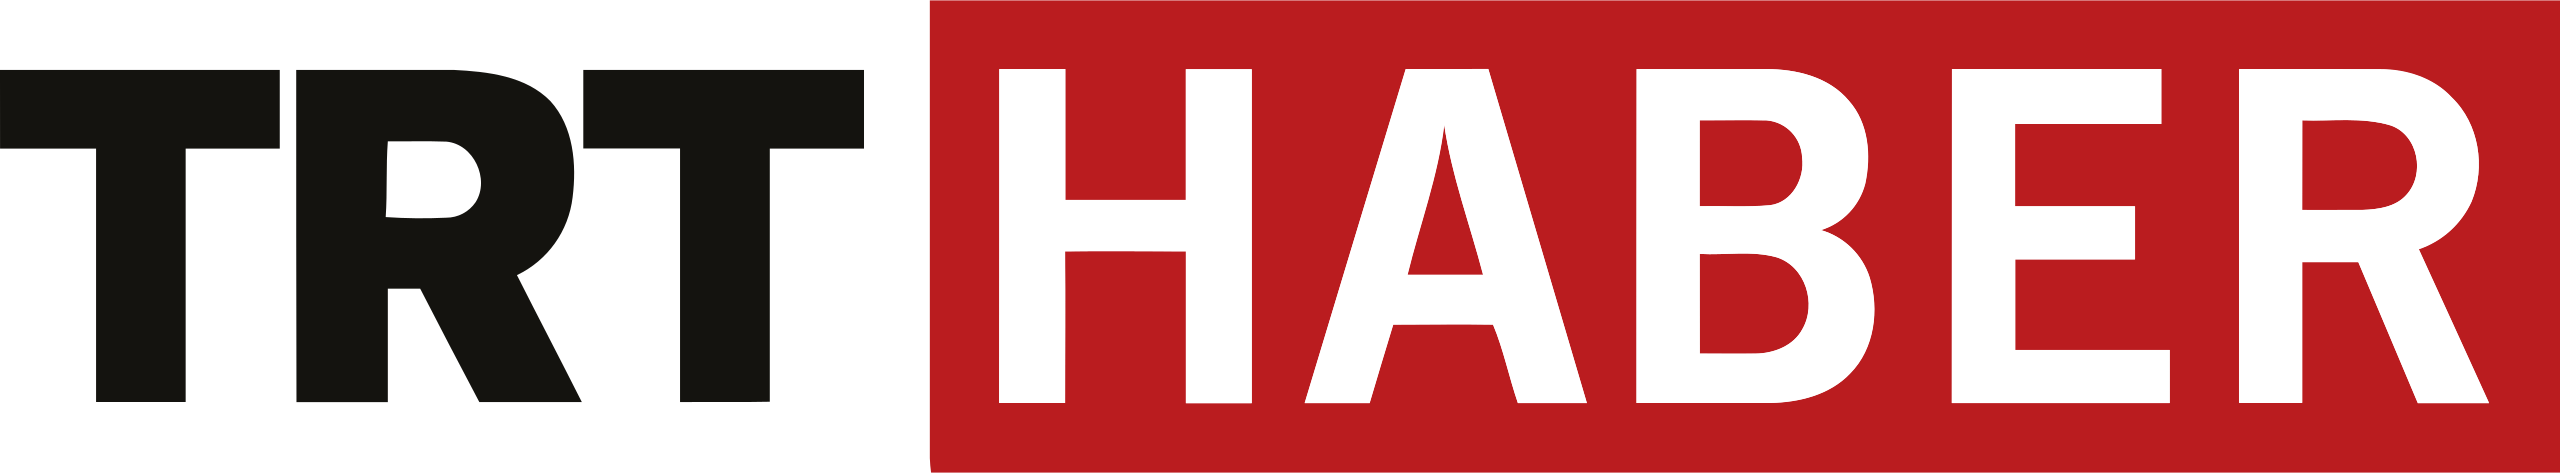 TRT Haber logo 2013 2020.svg